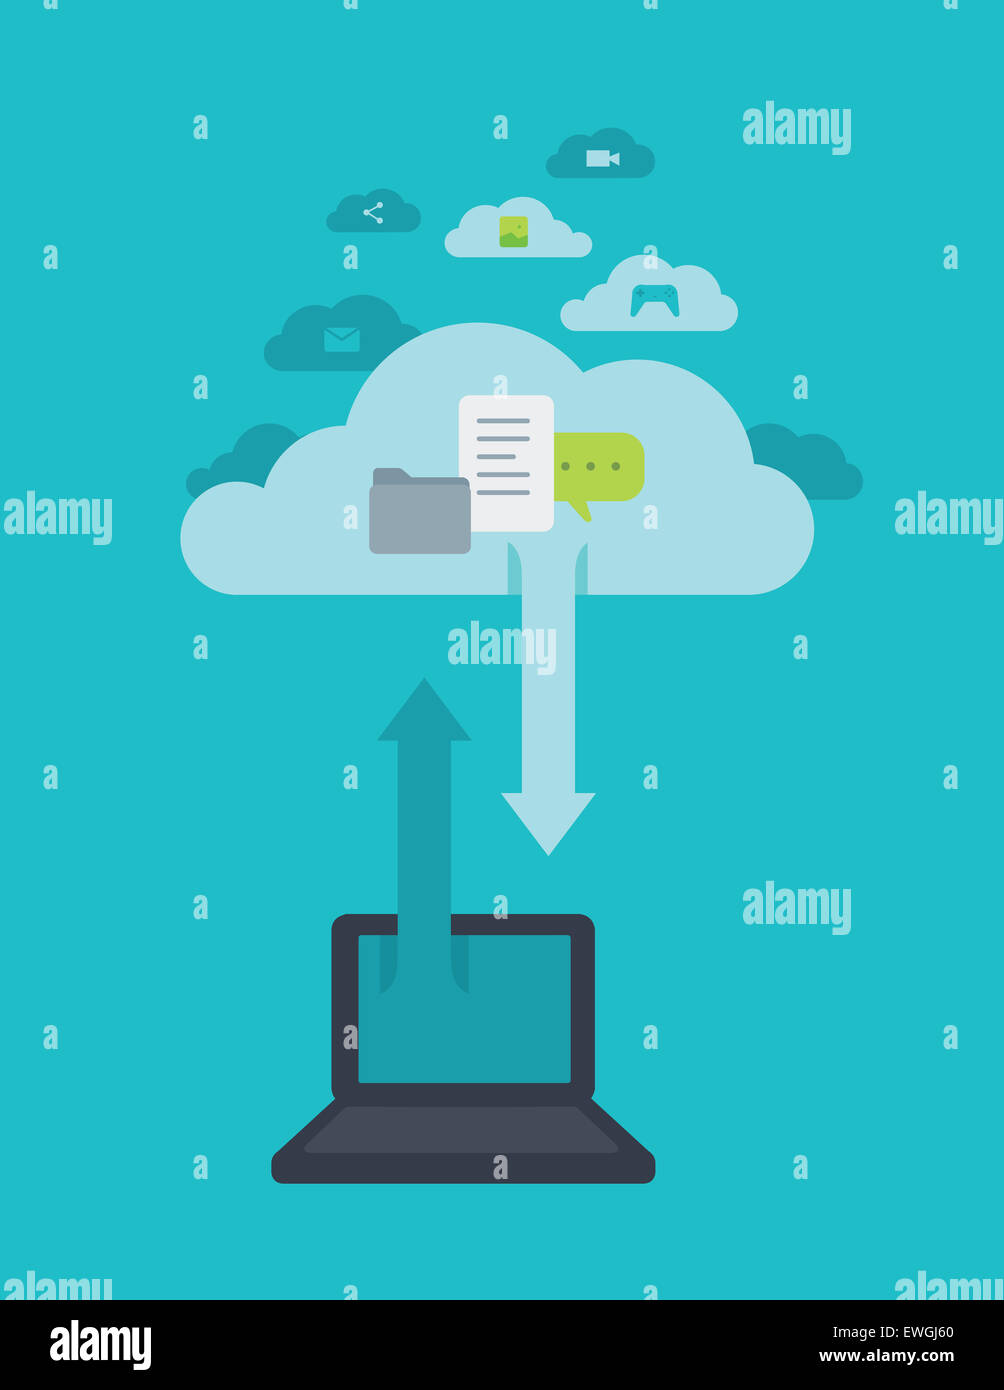 Image d'illustration de l'ordinateur portable avec le symbole des flèches dans le ciel représentant l'informatique en nuage Banque D'Images